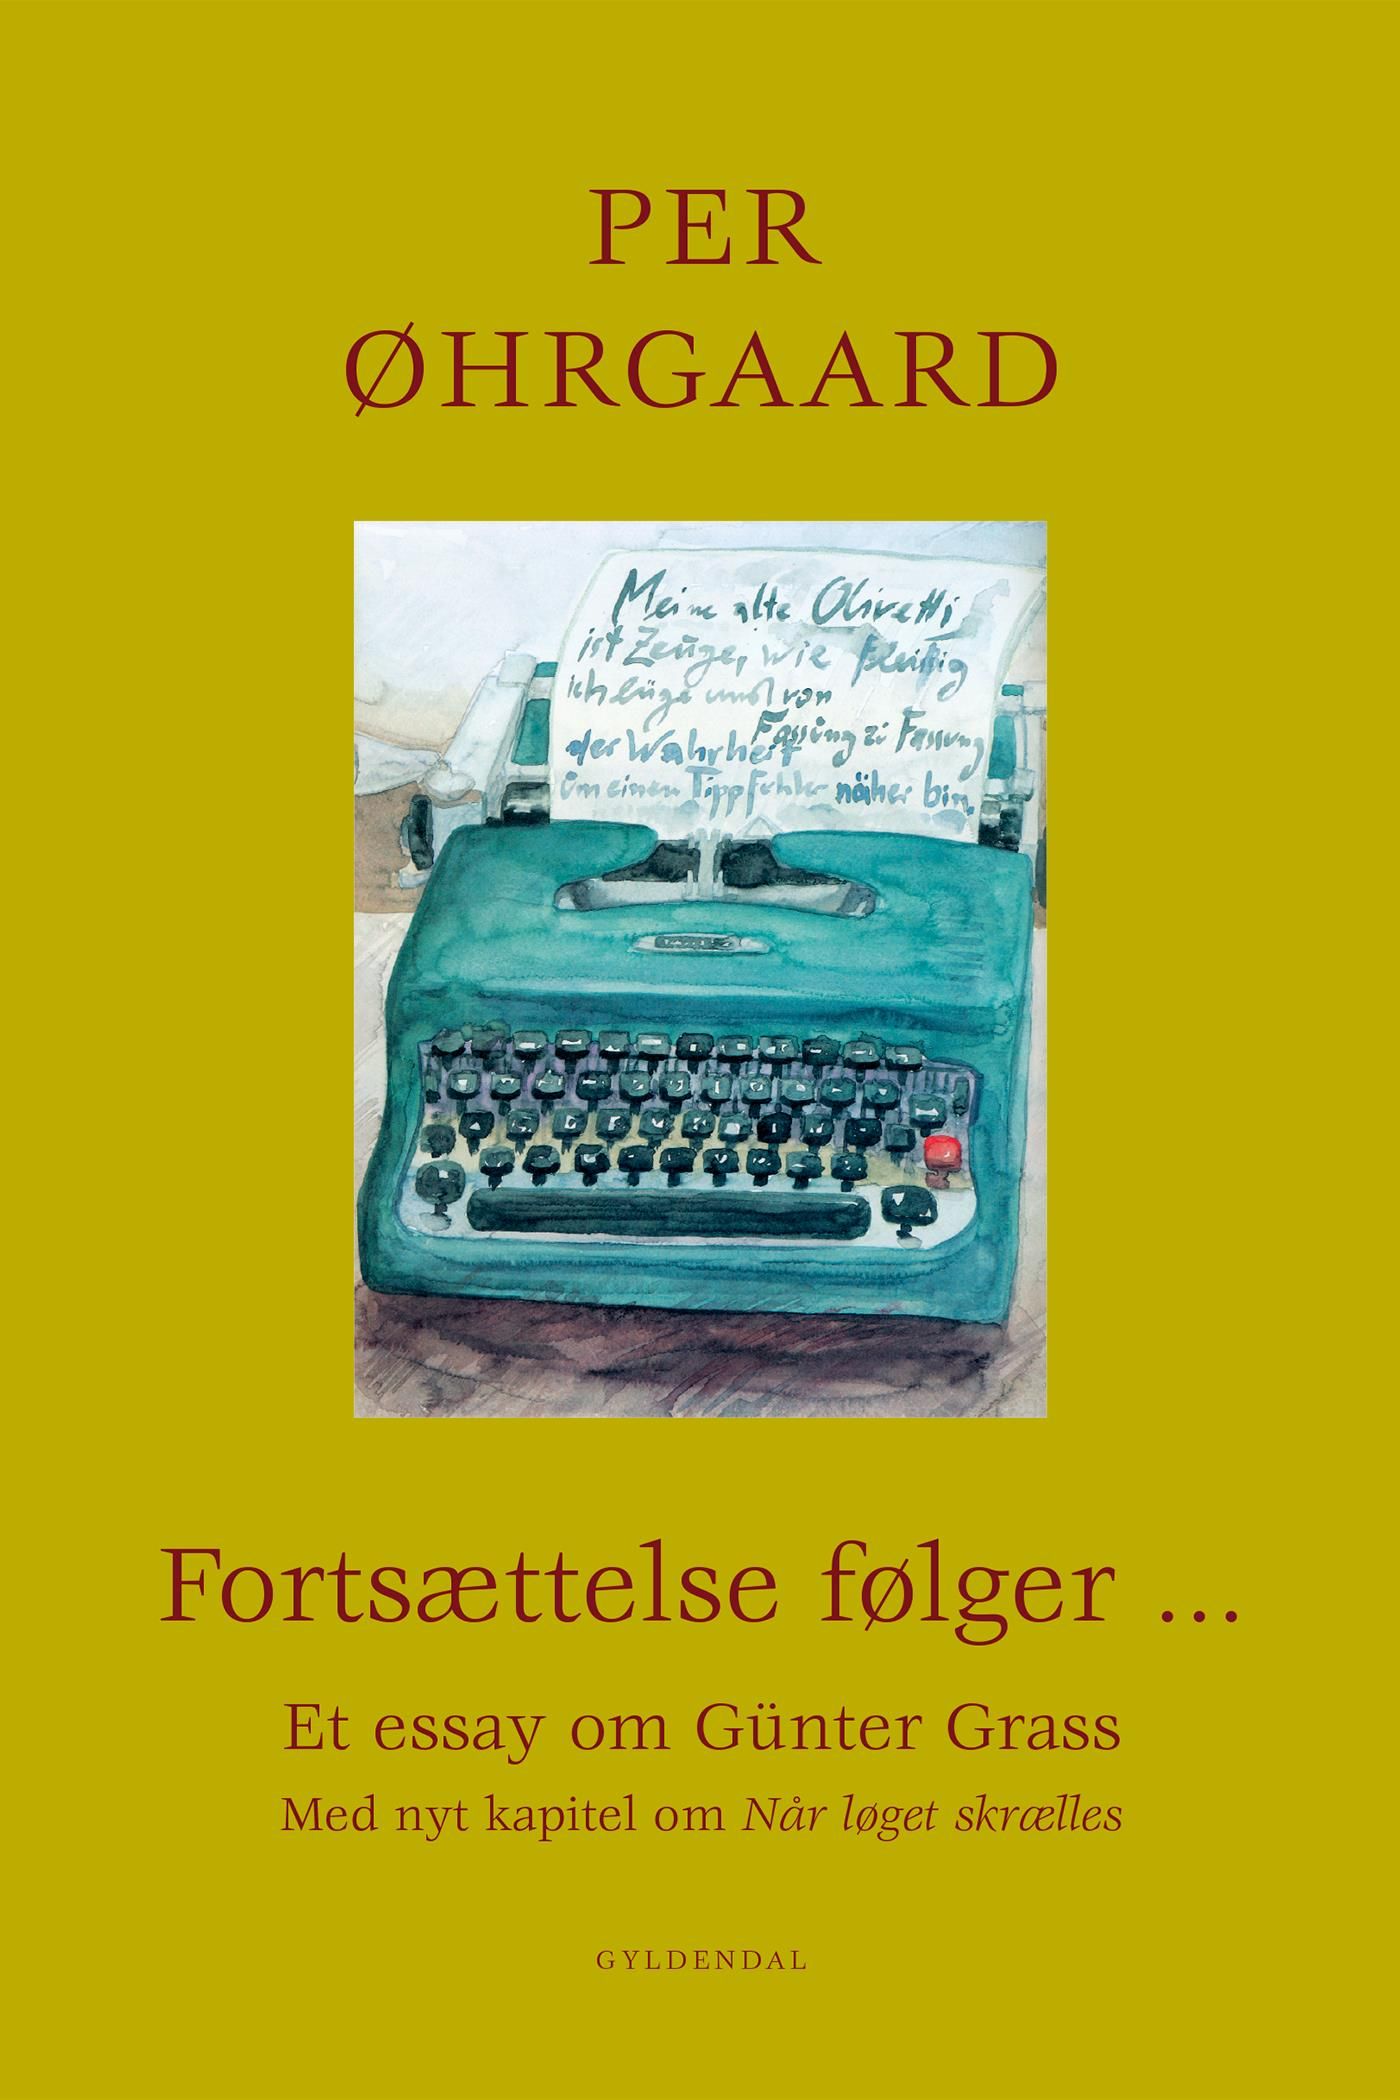 Fortsættelse følger ..., e-bok av Per Øhrgaard